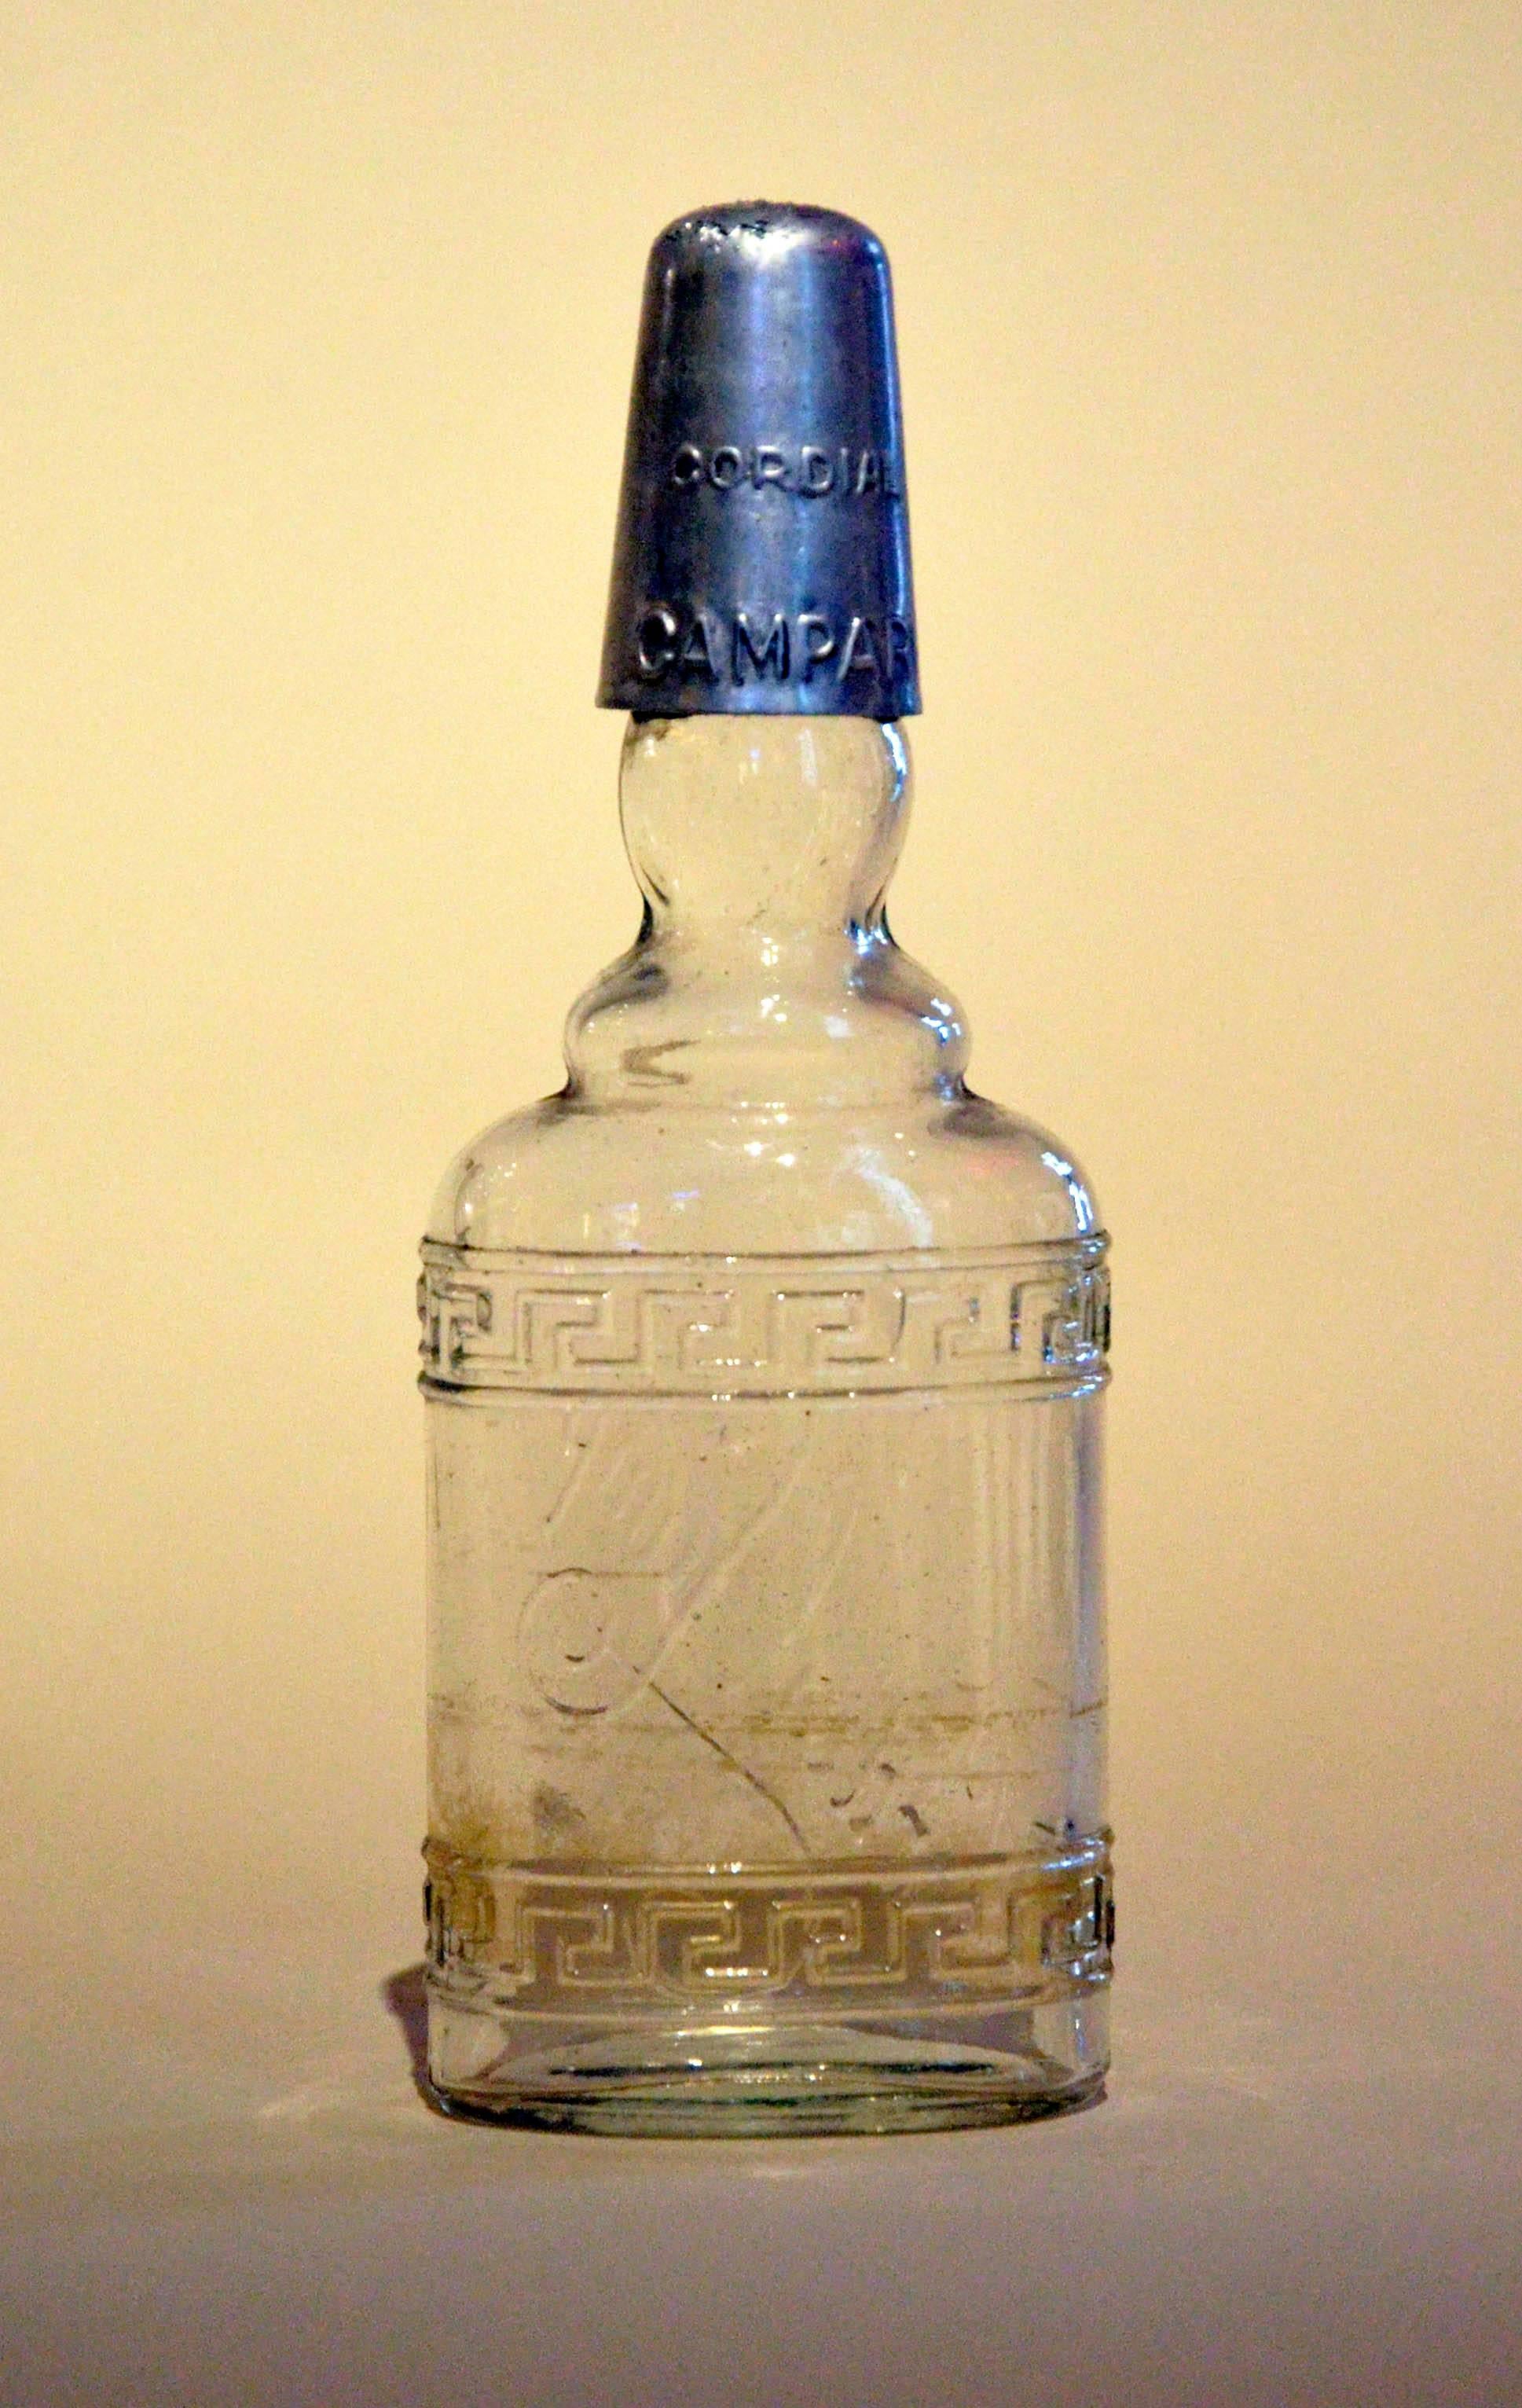 1950s Rare Vintage Italian Cordial Campari Glass Flask with Aluminium Cap 1